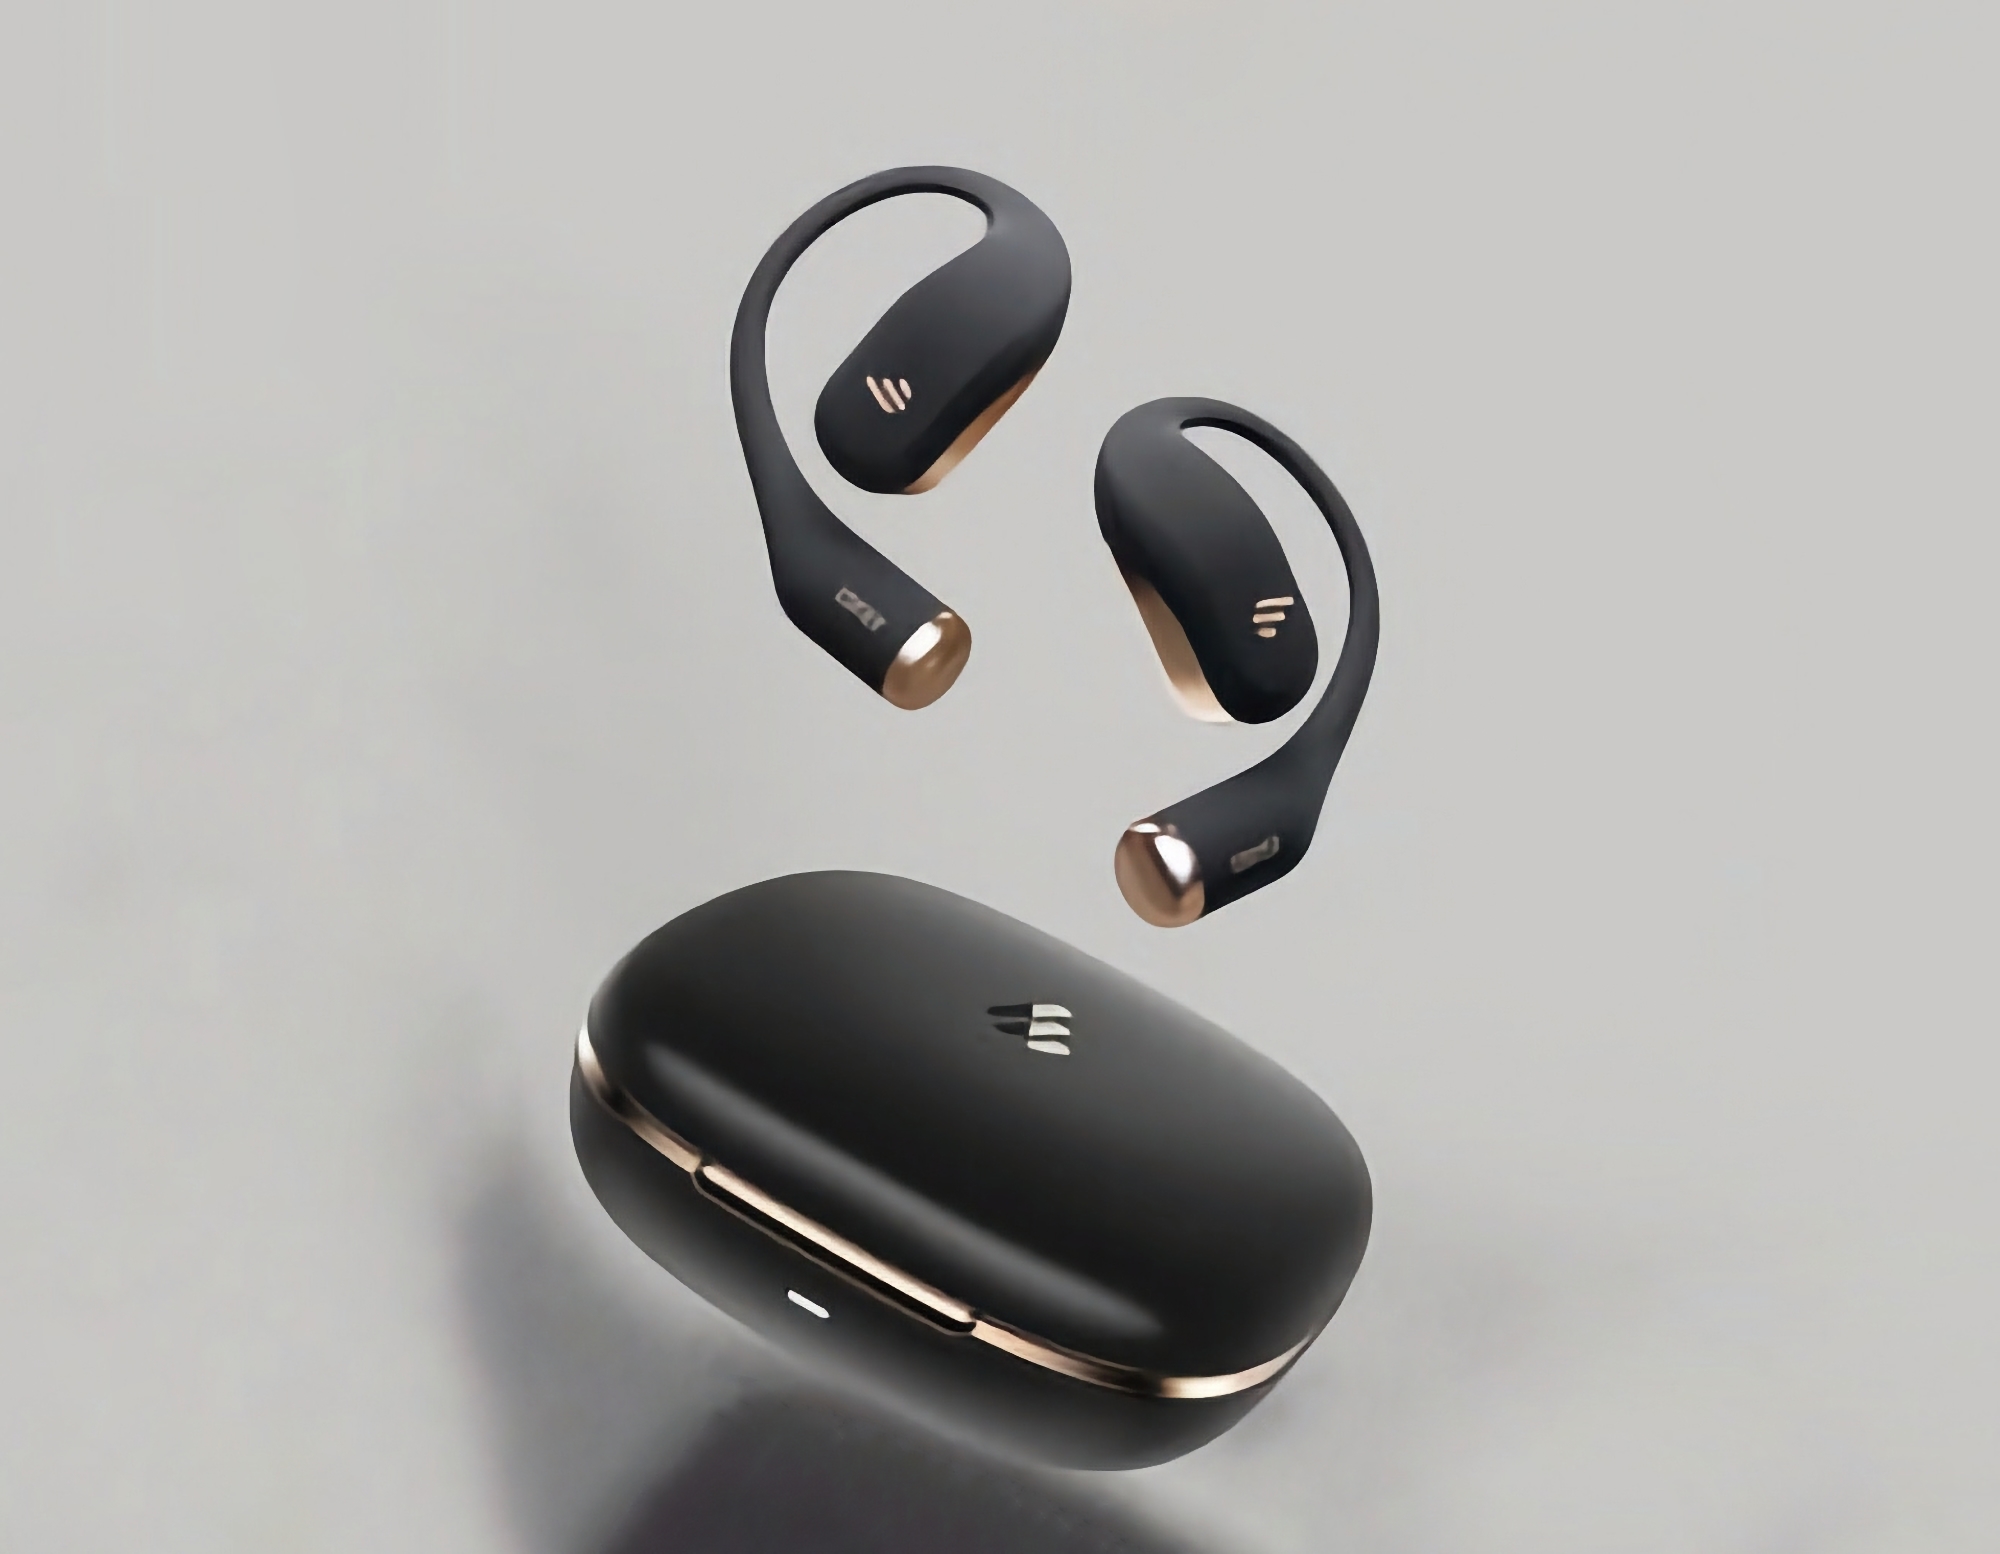 Edifier har presenterat hörlurarna Comfo Fit Open-ear TWS med Bluetooth 5.3, IP54-skydd och upp till 45 timmars batteritid